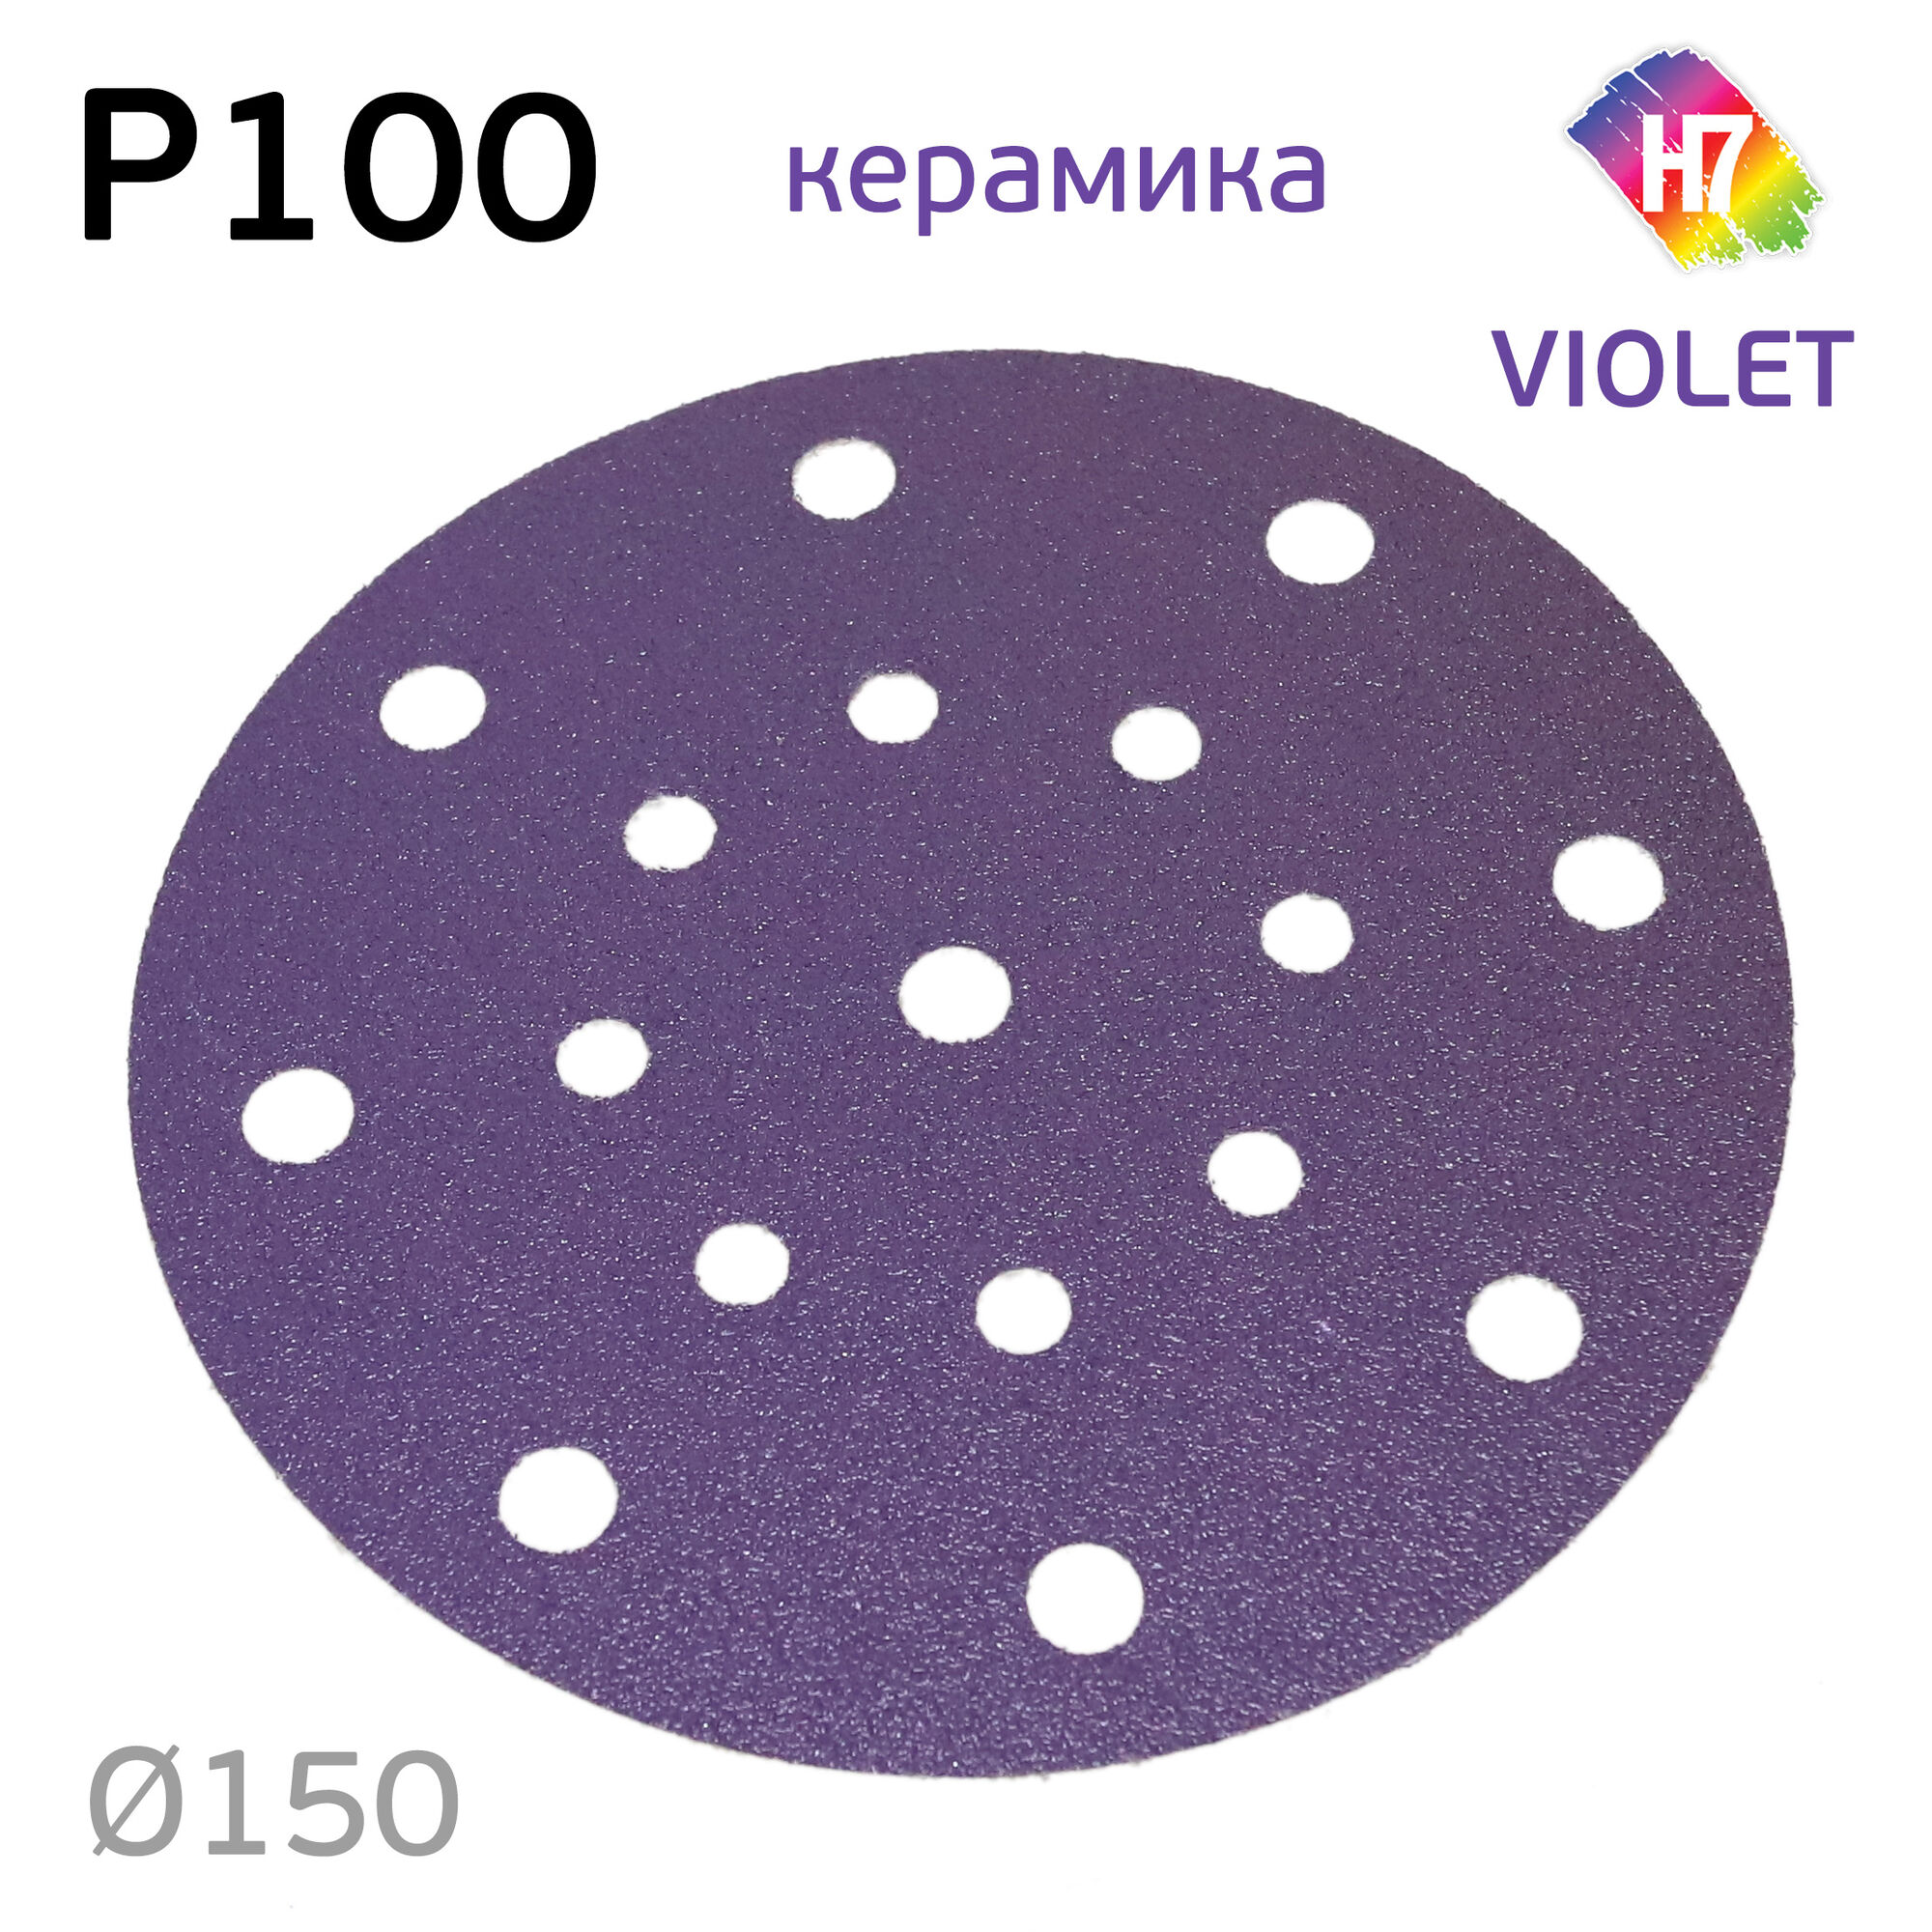 Круг абразивный H7 Violet P100 липучка (17отв.) керамическое зерно